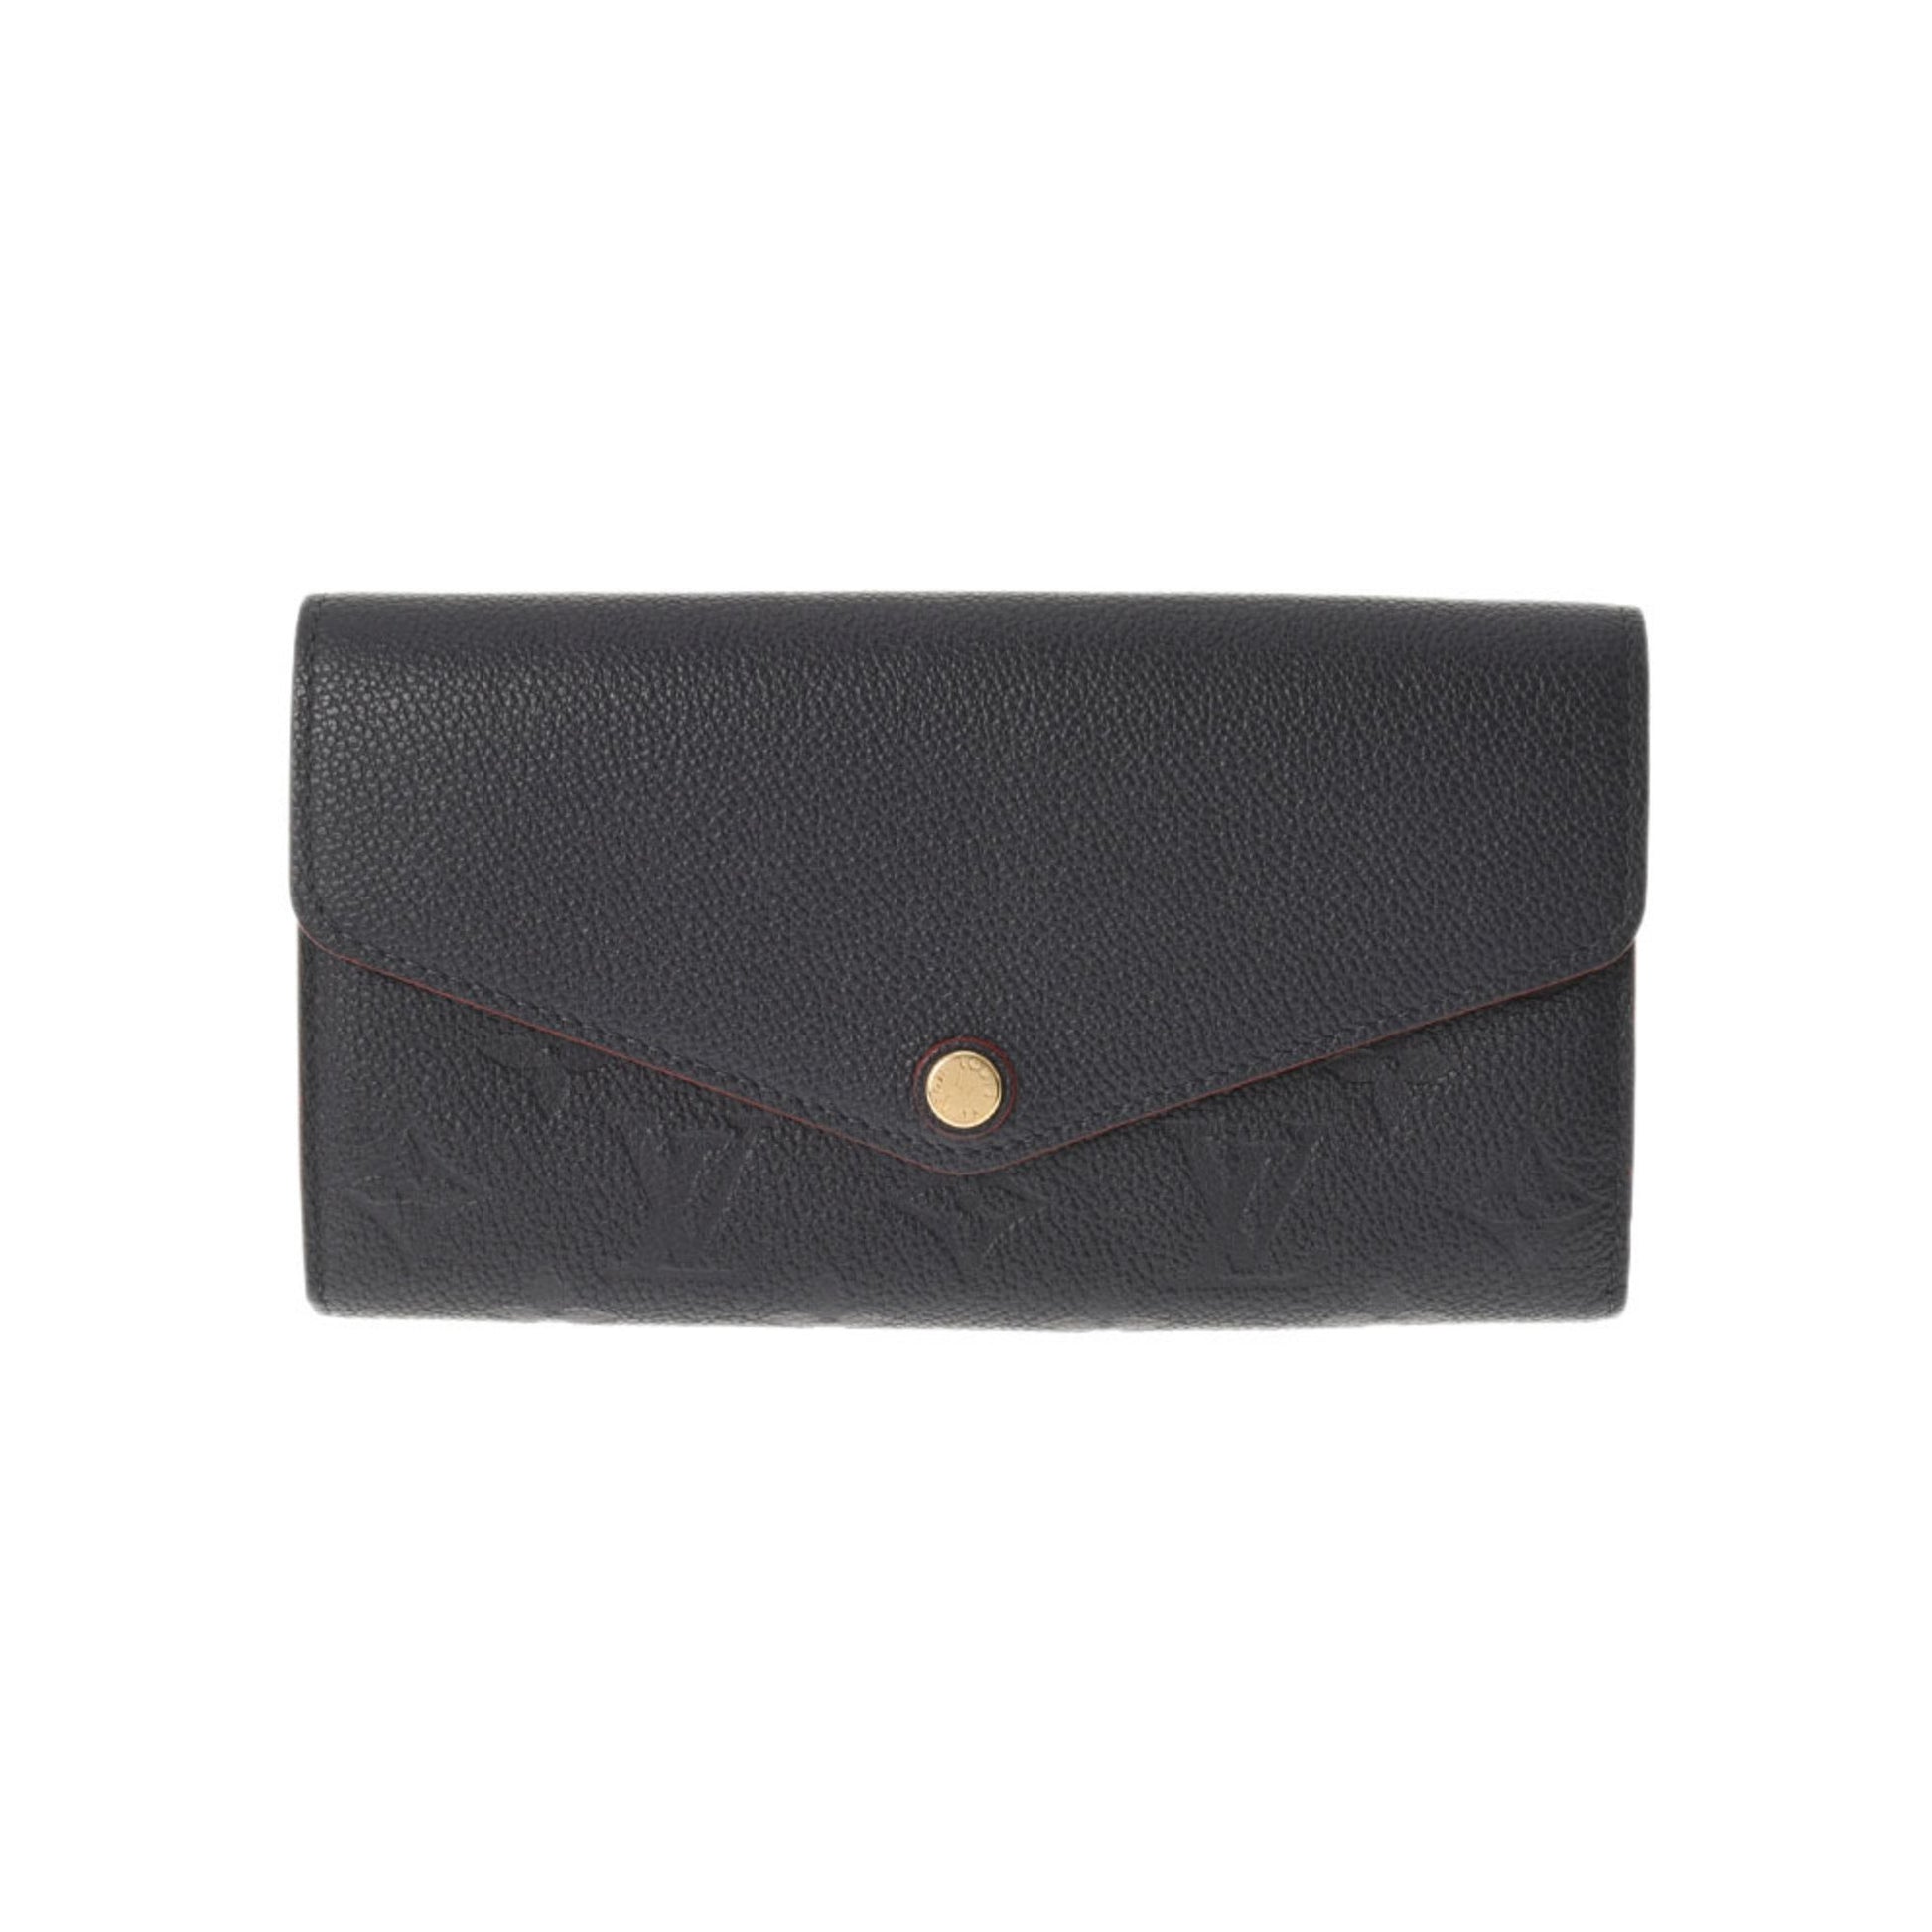 Louis Vuitton] Louis Vuitton Portofoille Sarah long wallet M62125